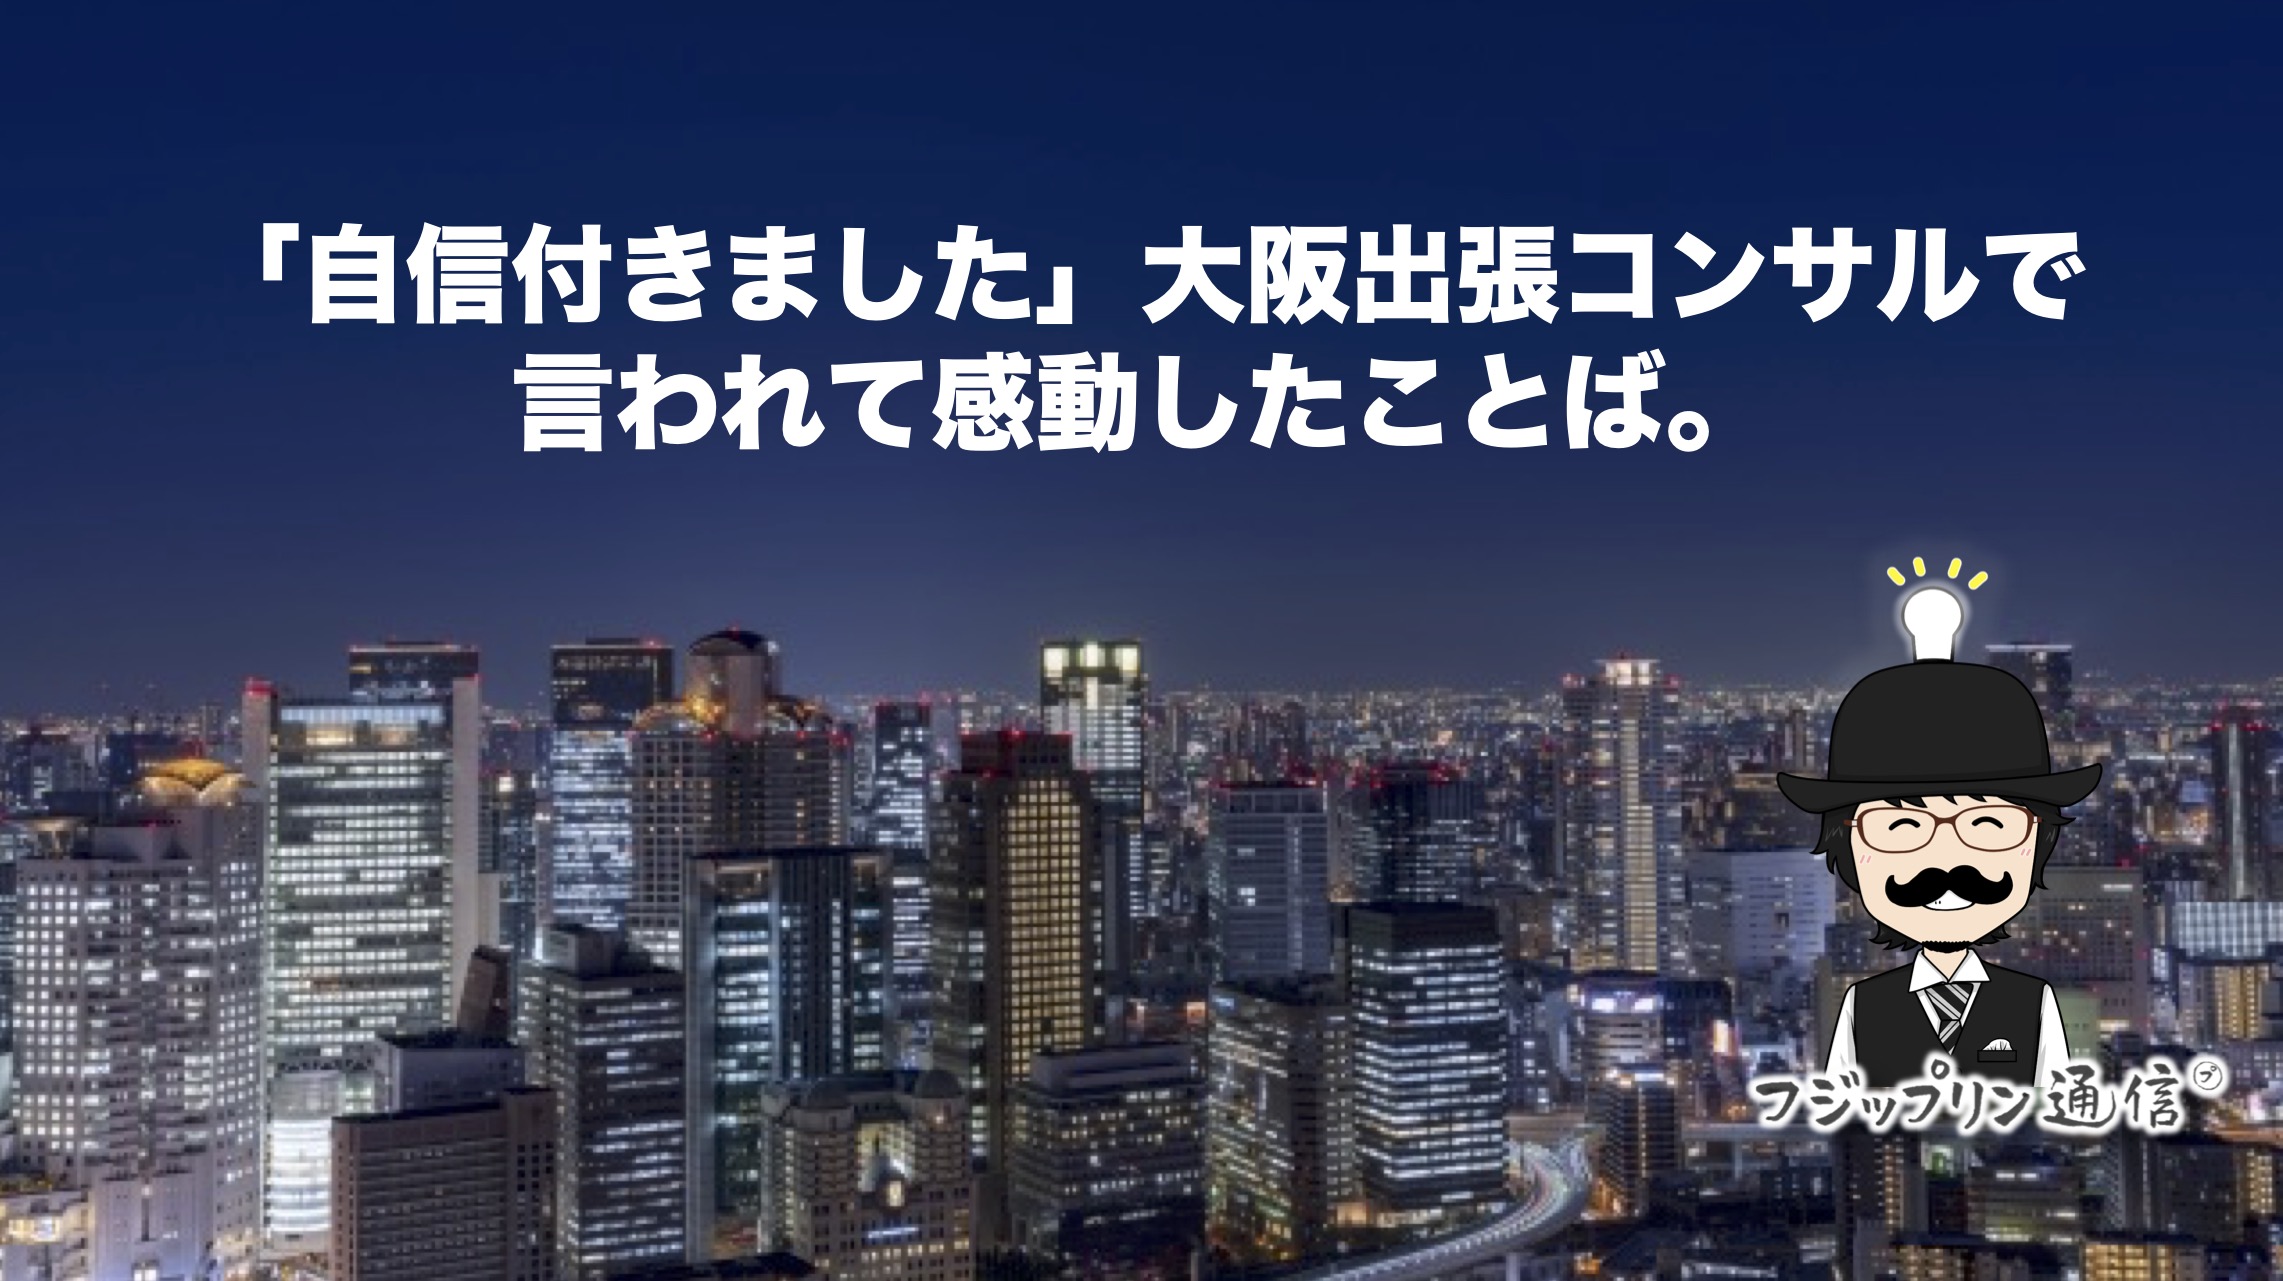 「自信付きました」大阪出張コンサル言われて感動したことば。